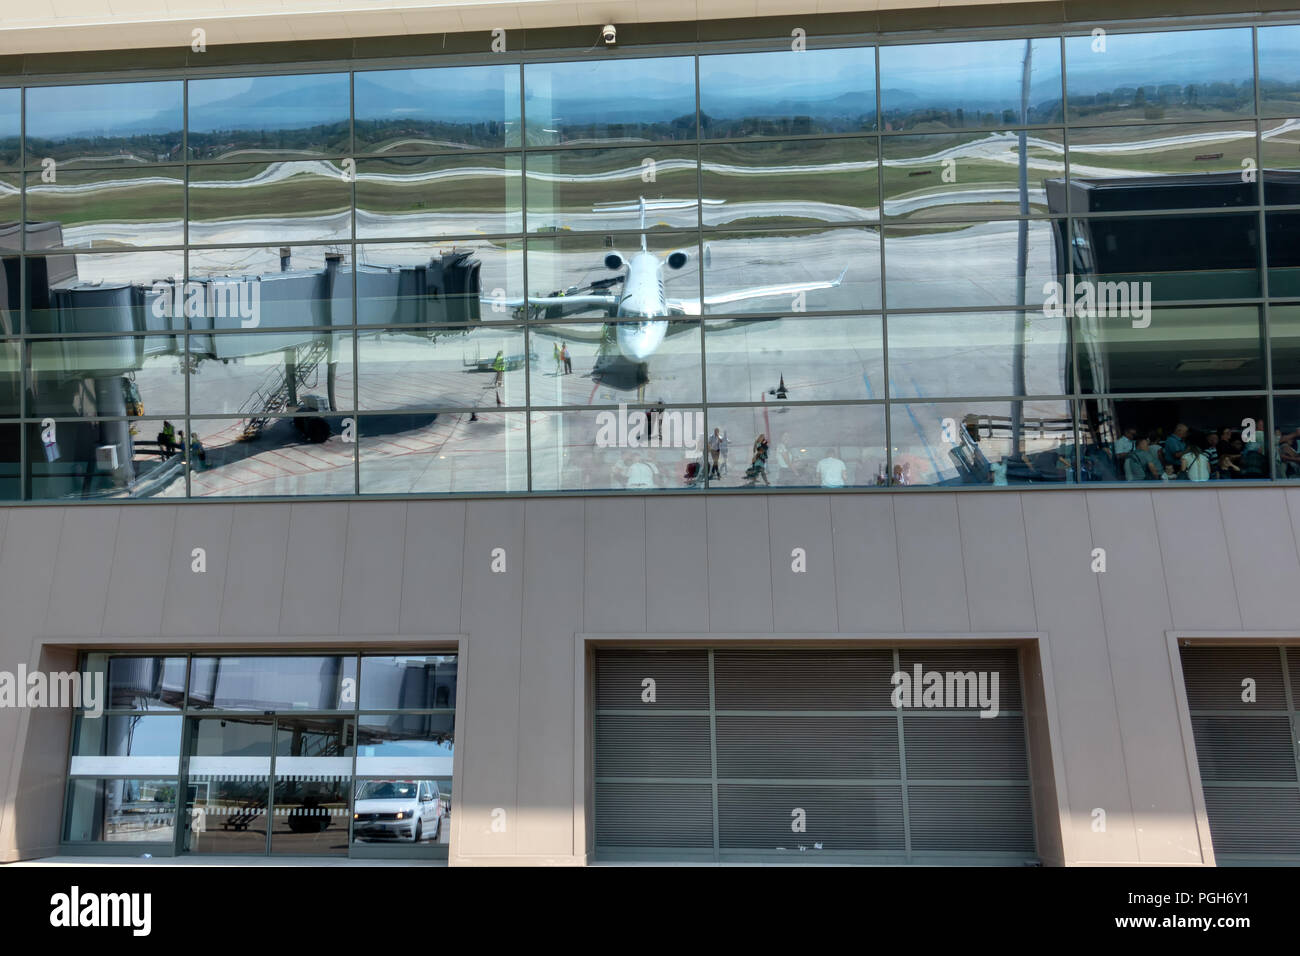 Reflet d'avions de transport de passagers en avion de l'aérogare où les passagers d'autres sont en attente de leur vol conseil Banque D'Images